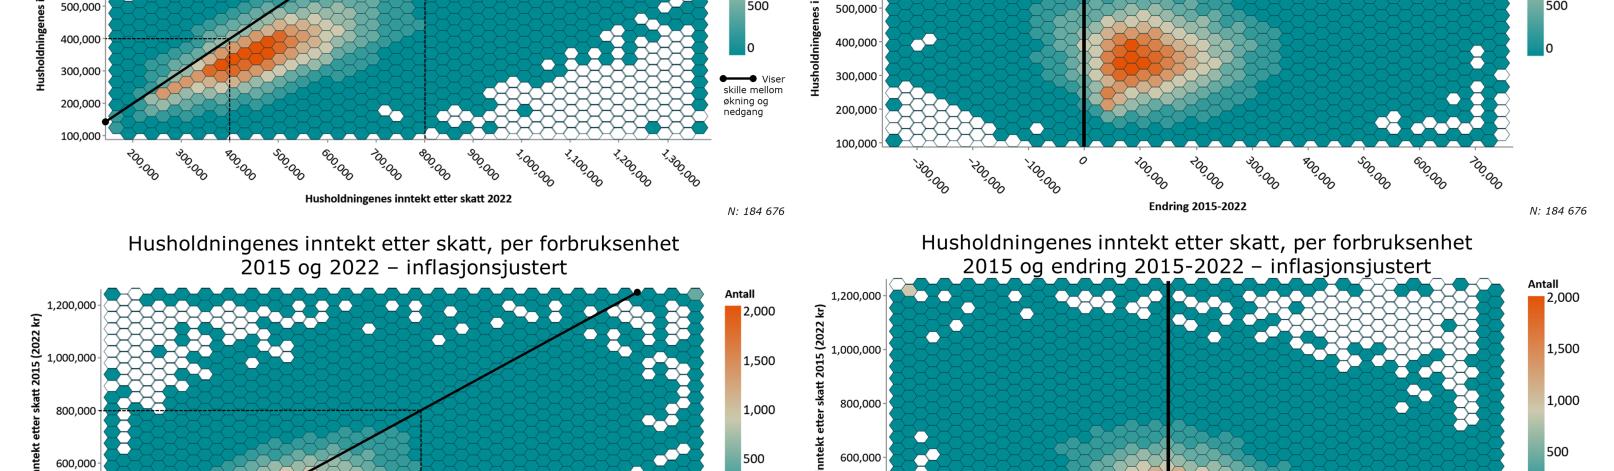 Hexbin. Husholdningsinntekt i Trøndelag 2015-2022. Nominelt og inflasjonsjustert.